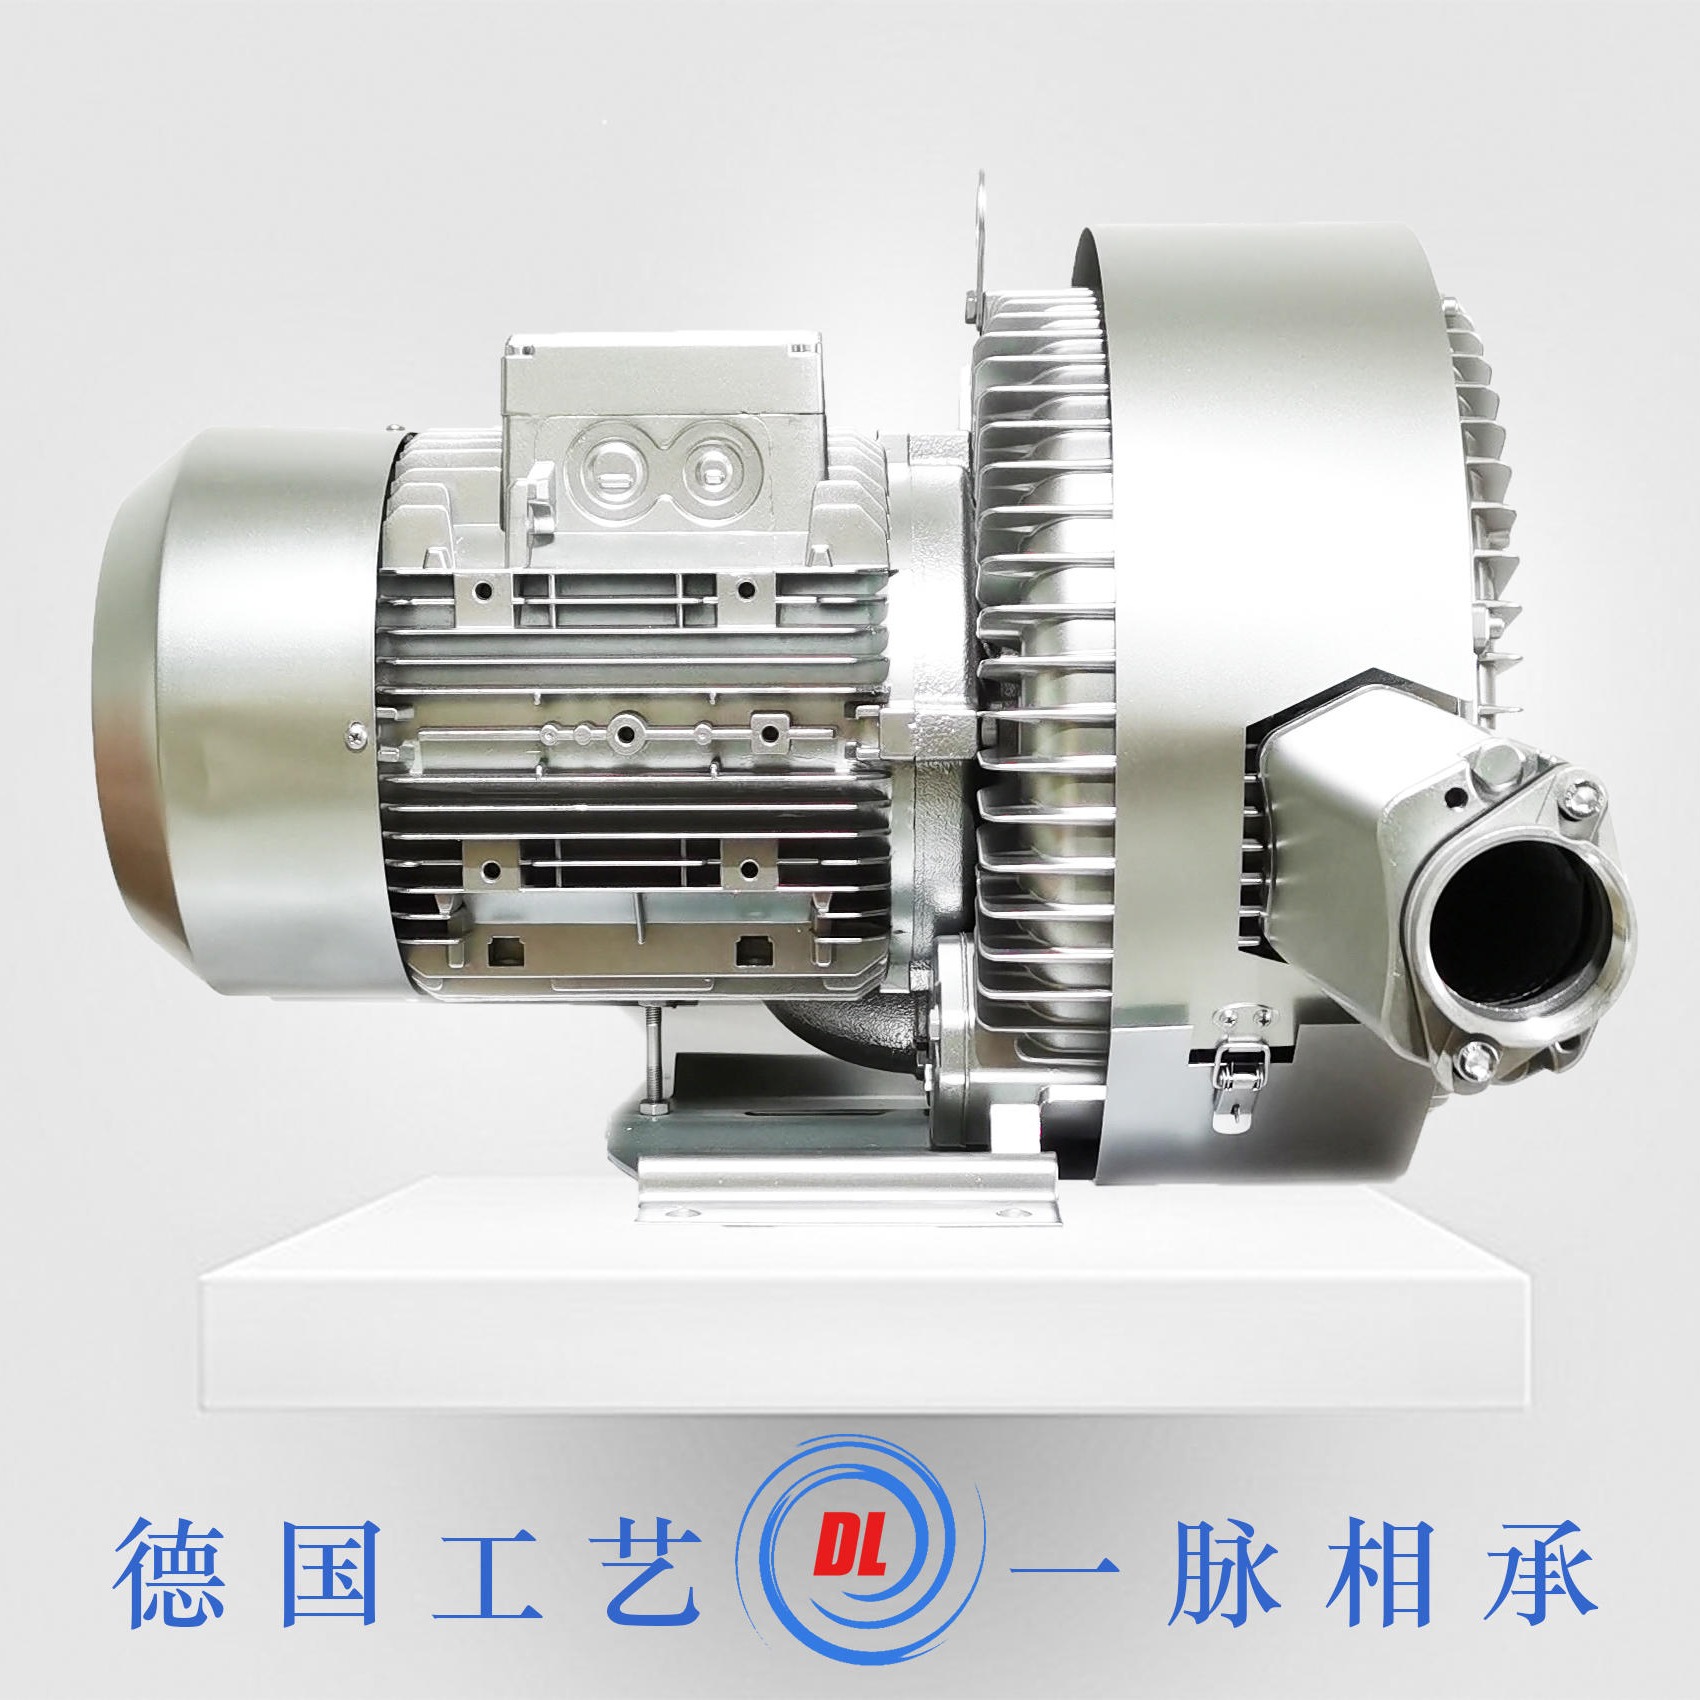 德凌DL-72-X4双级漩涡气泵 5.5kw吸料高压风机图片